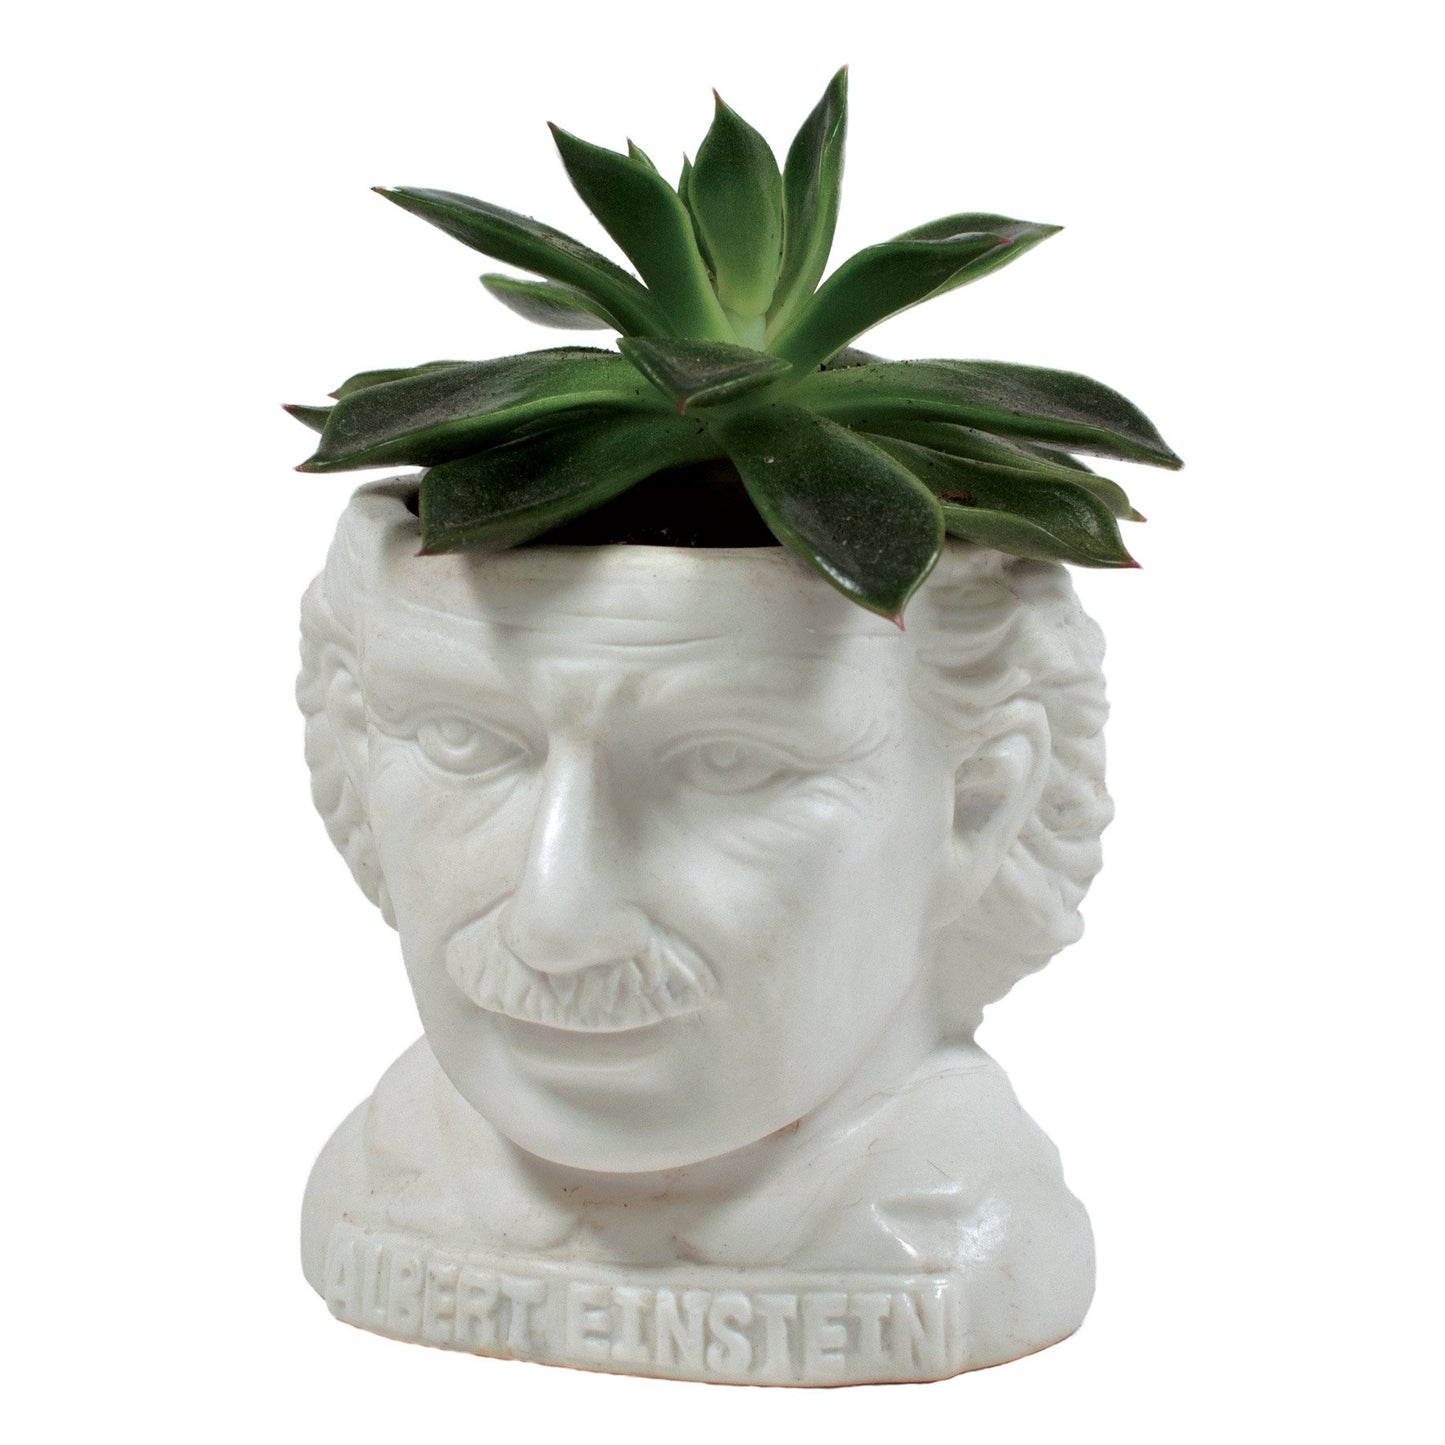 Albert einstein Unemployed philosopher's guild plant planter genius physicist e=mc2 professor crazy hair great mustache 